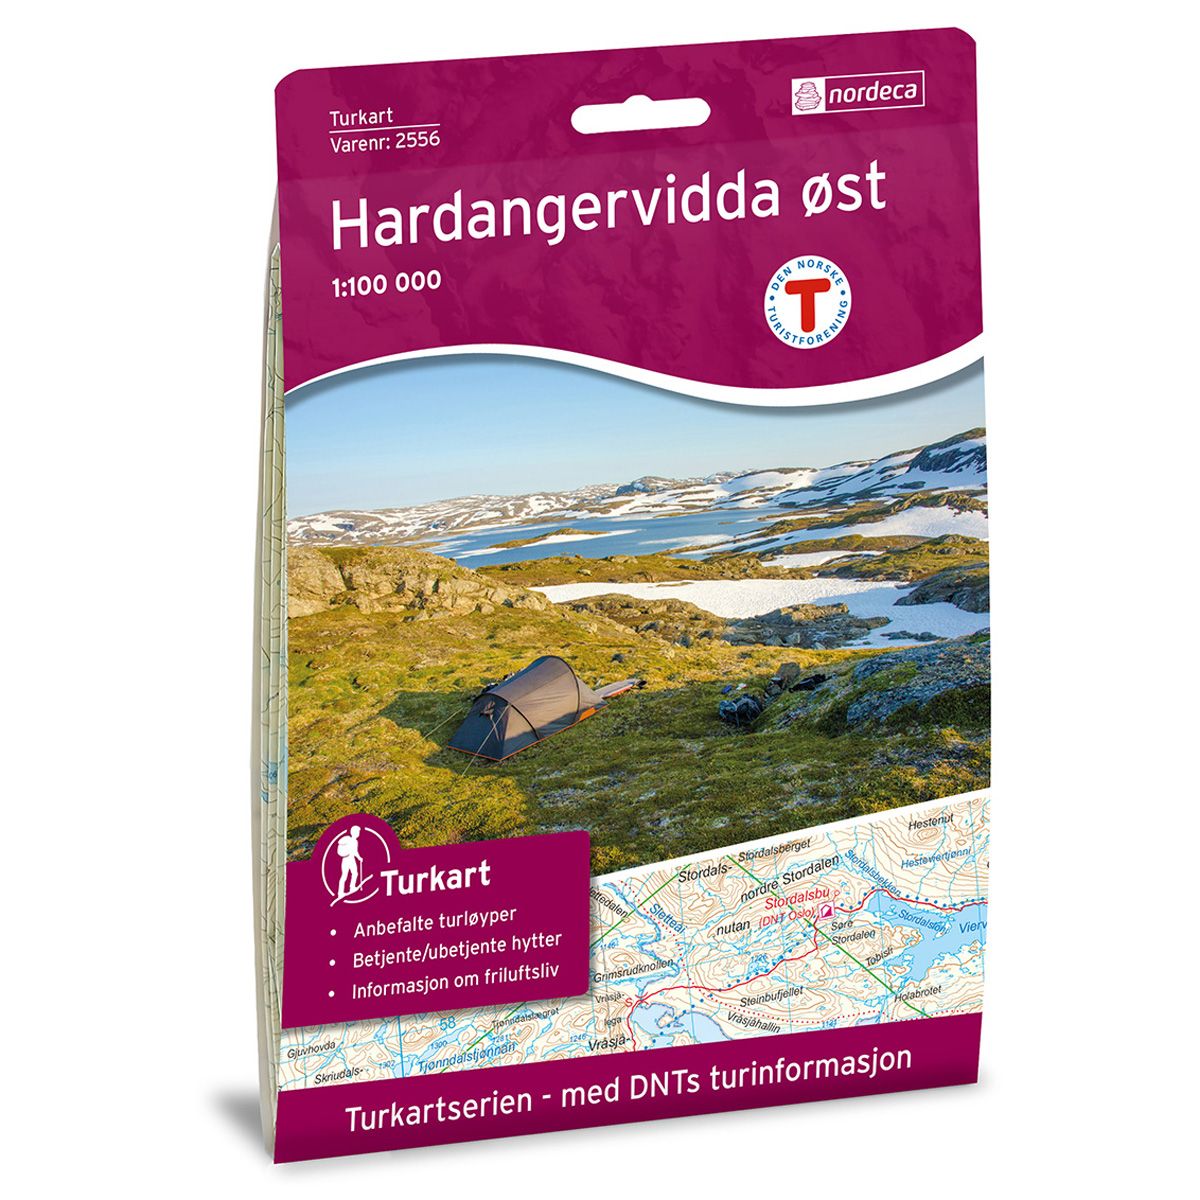 Hardangervidda øst